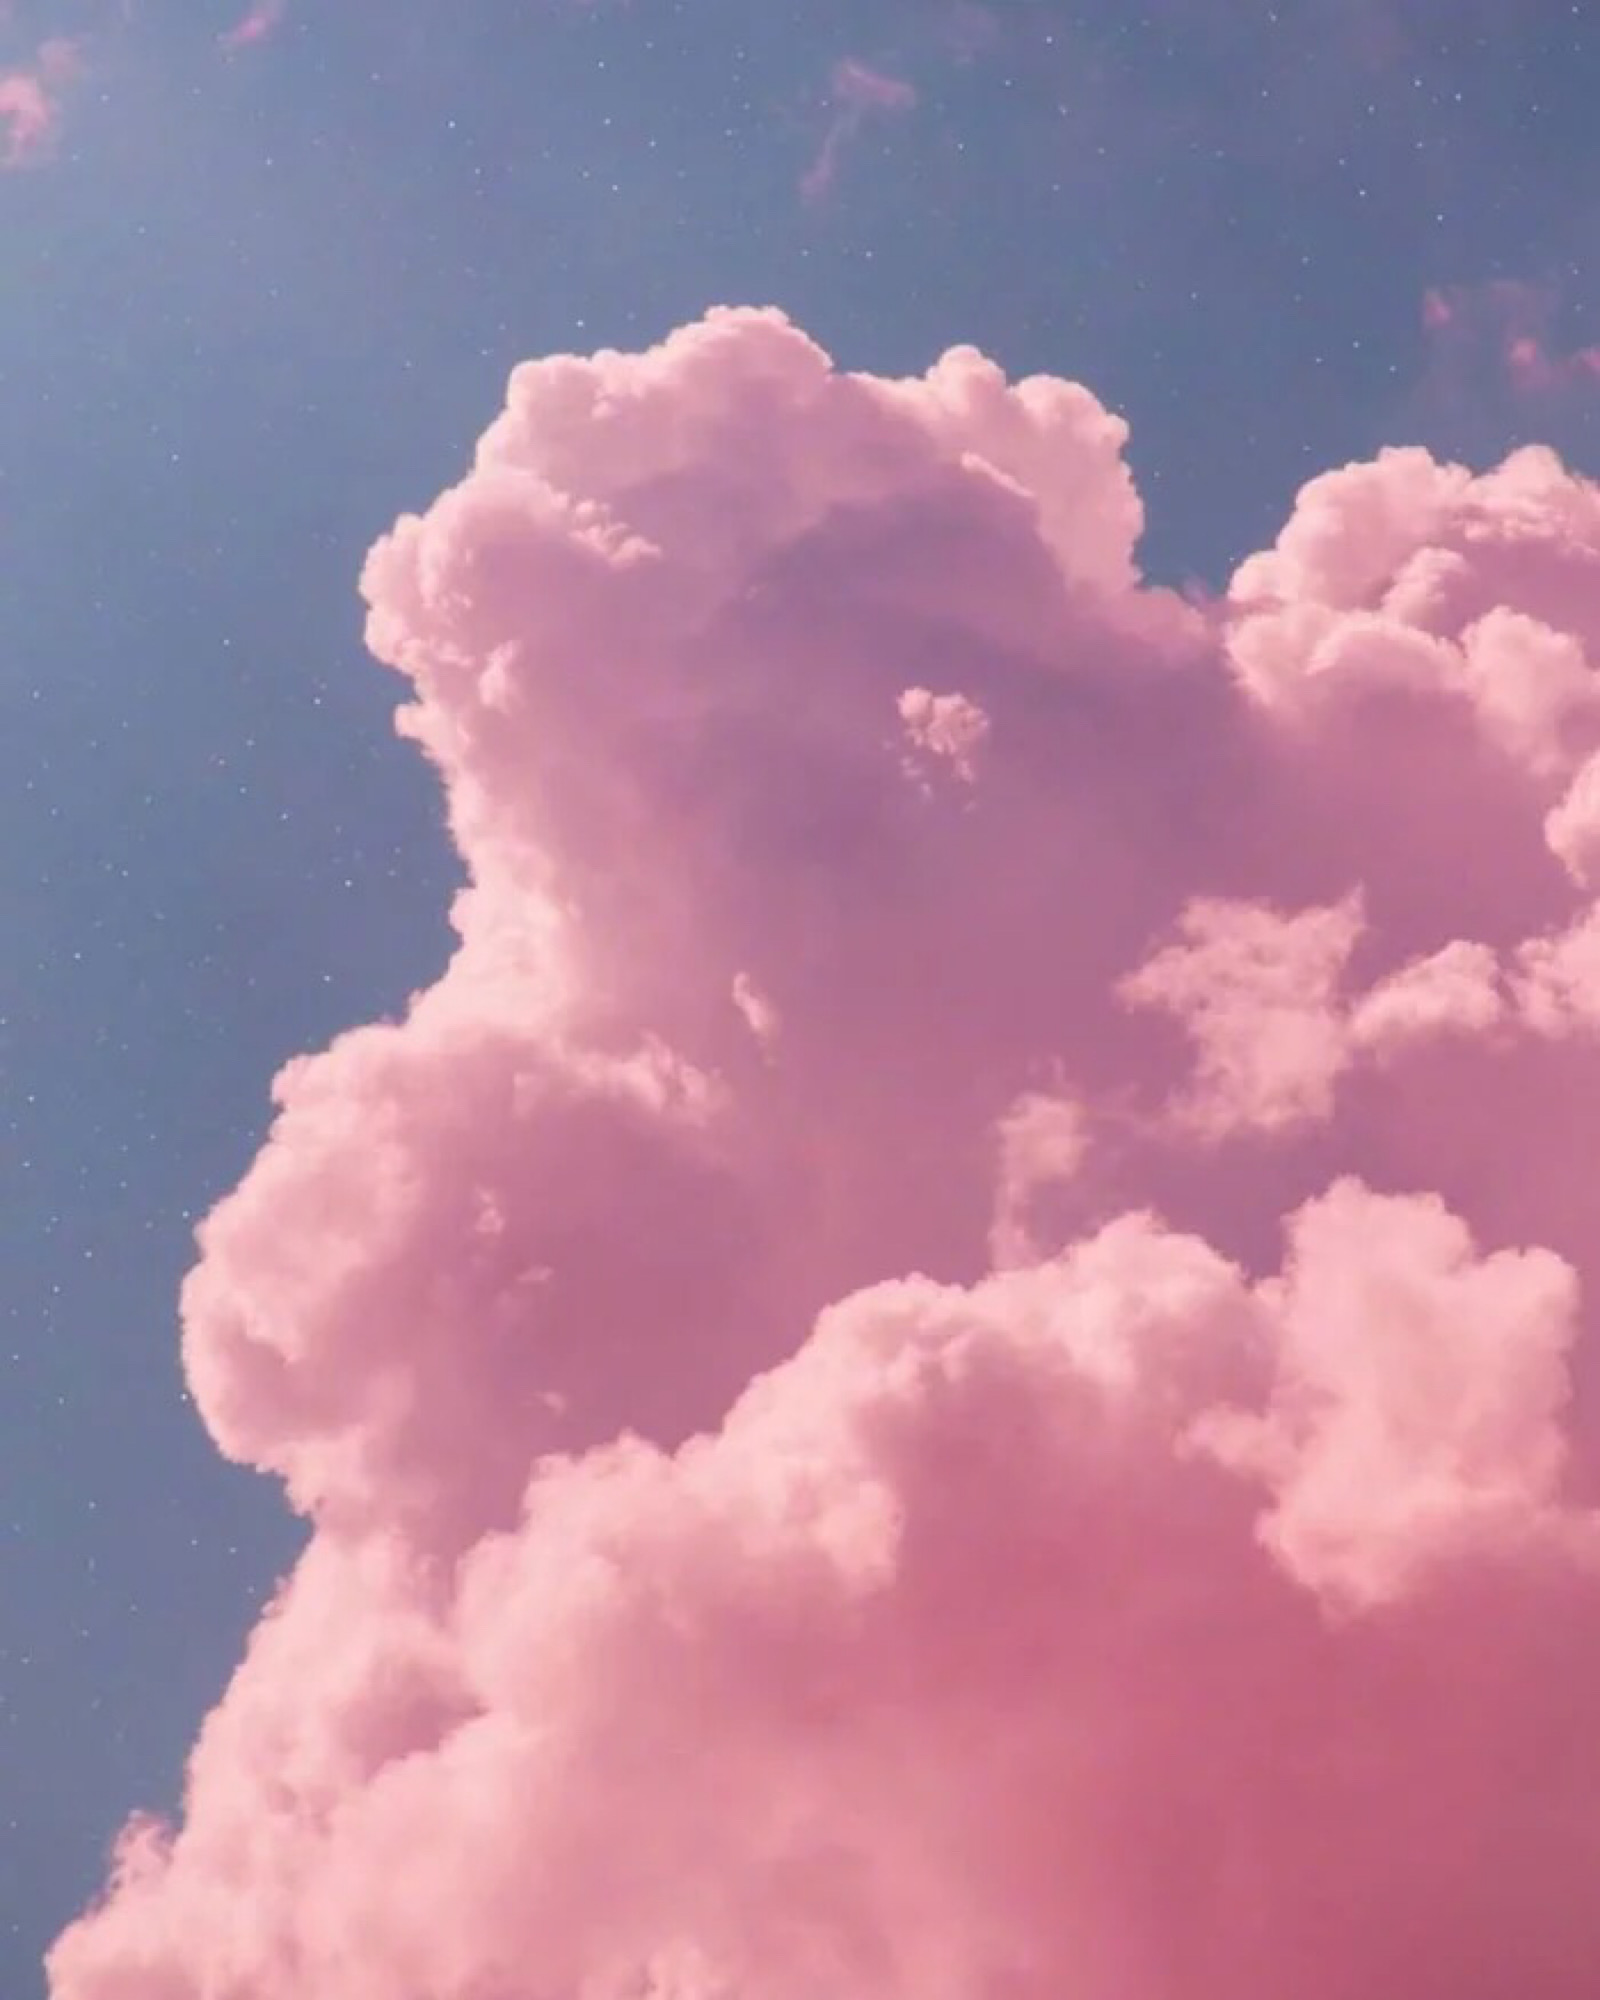 粉色天空,微微有点单调,但是可以做背景小装饰之类的.